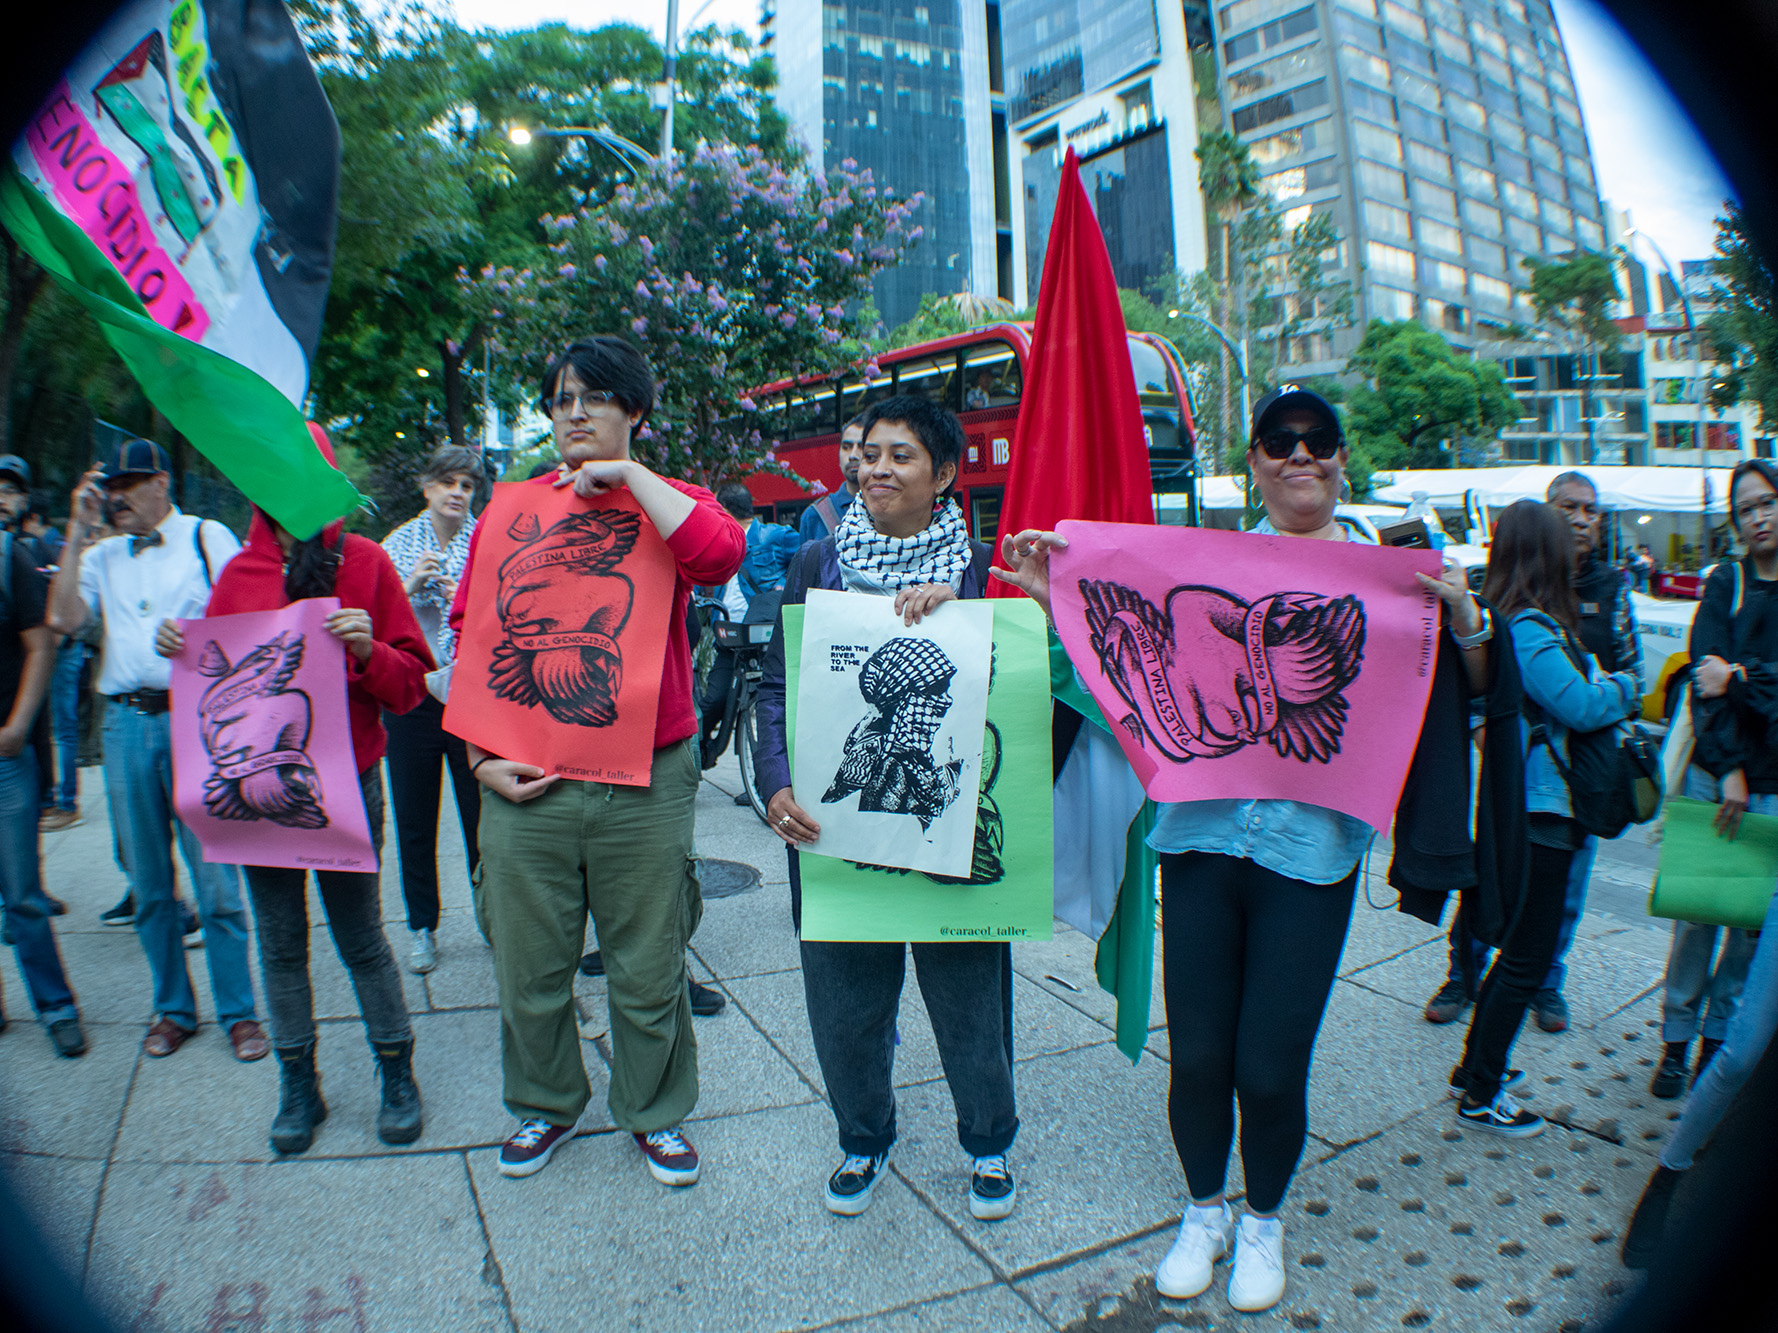 Al compás de melodías y ritmos corporales frente a la Embajada de Estados Unidos, colectivos y organizaciones formaron una Ola de Paz en México para denunciar el continuo genocidio perpetrado por las fuerzas armadas de Israel en Palestina.